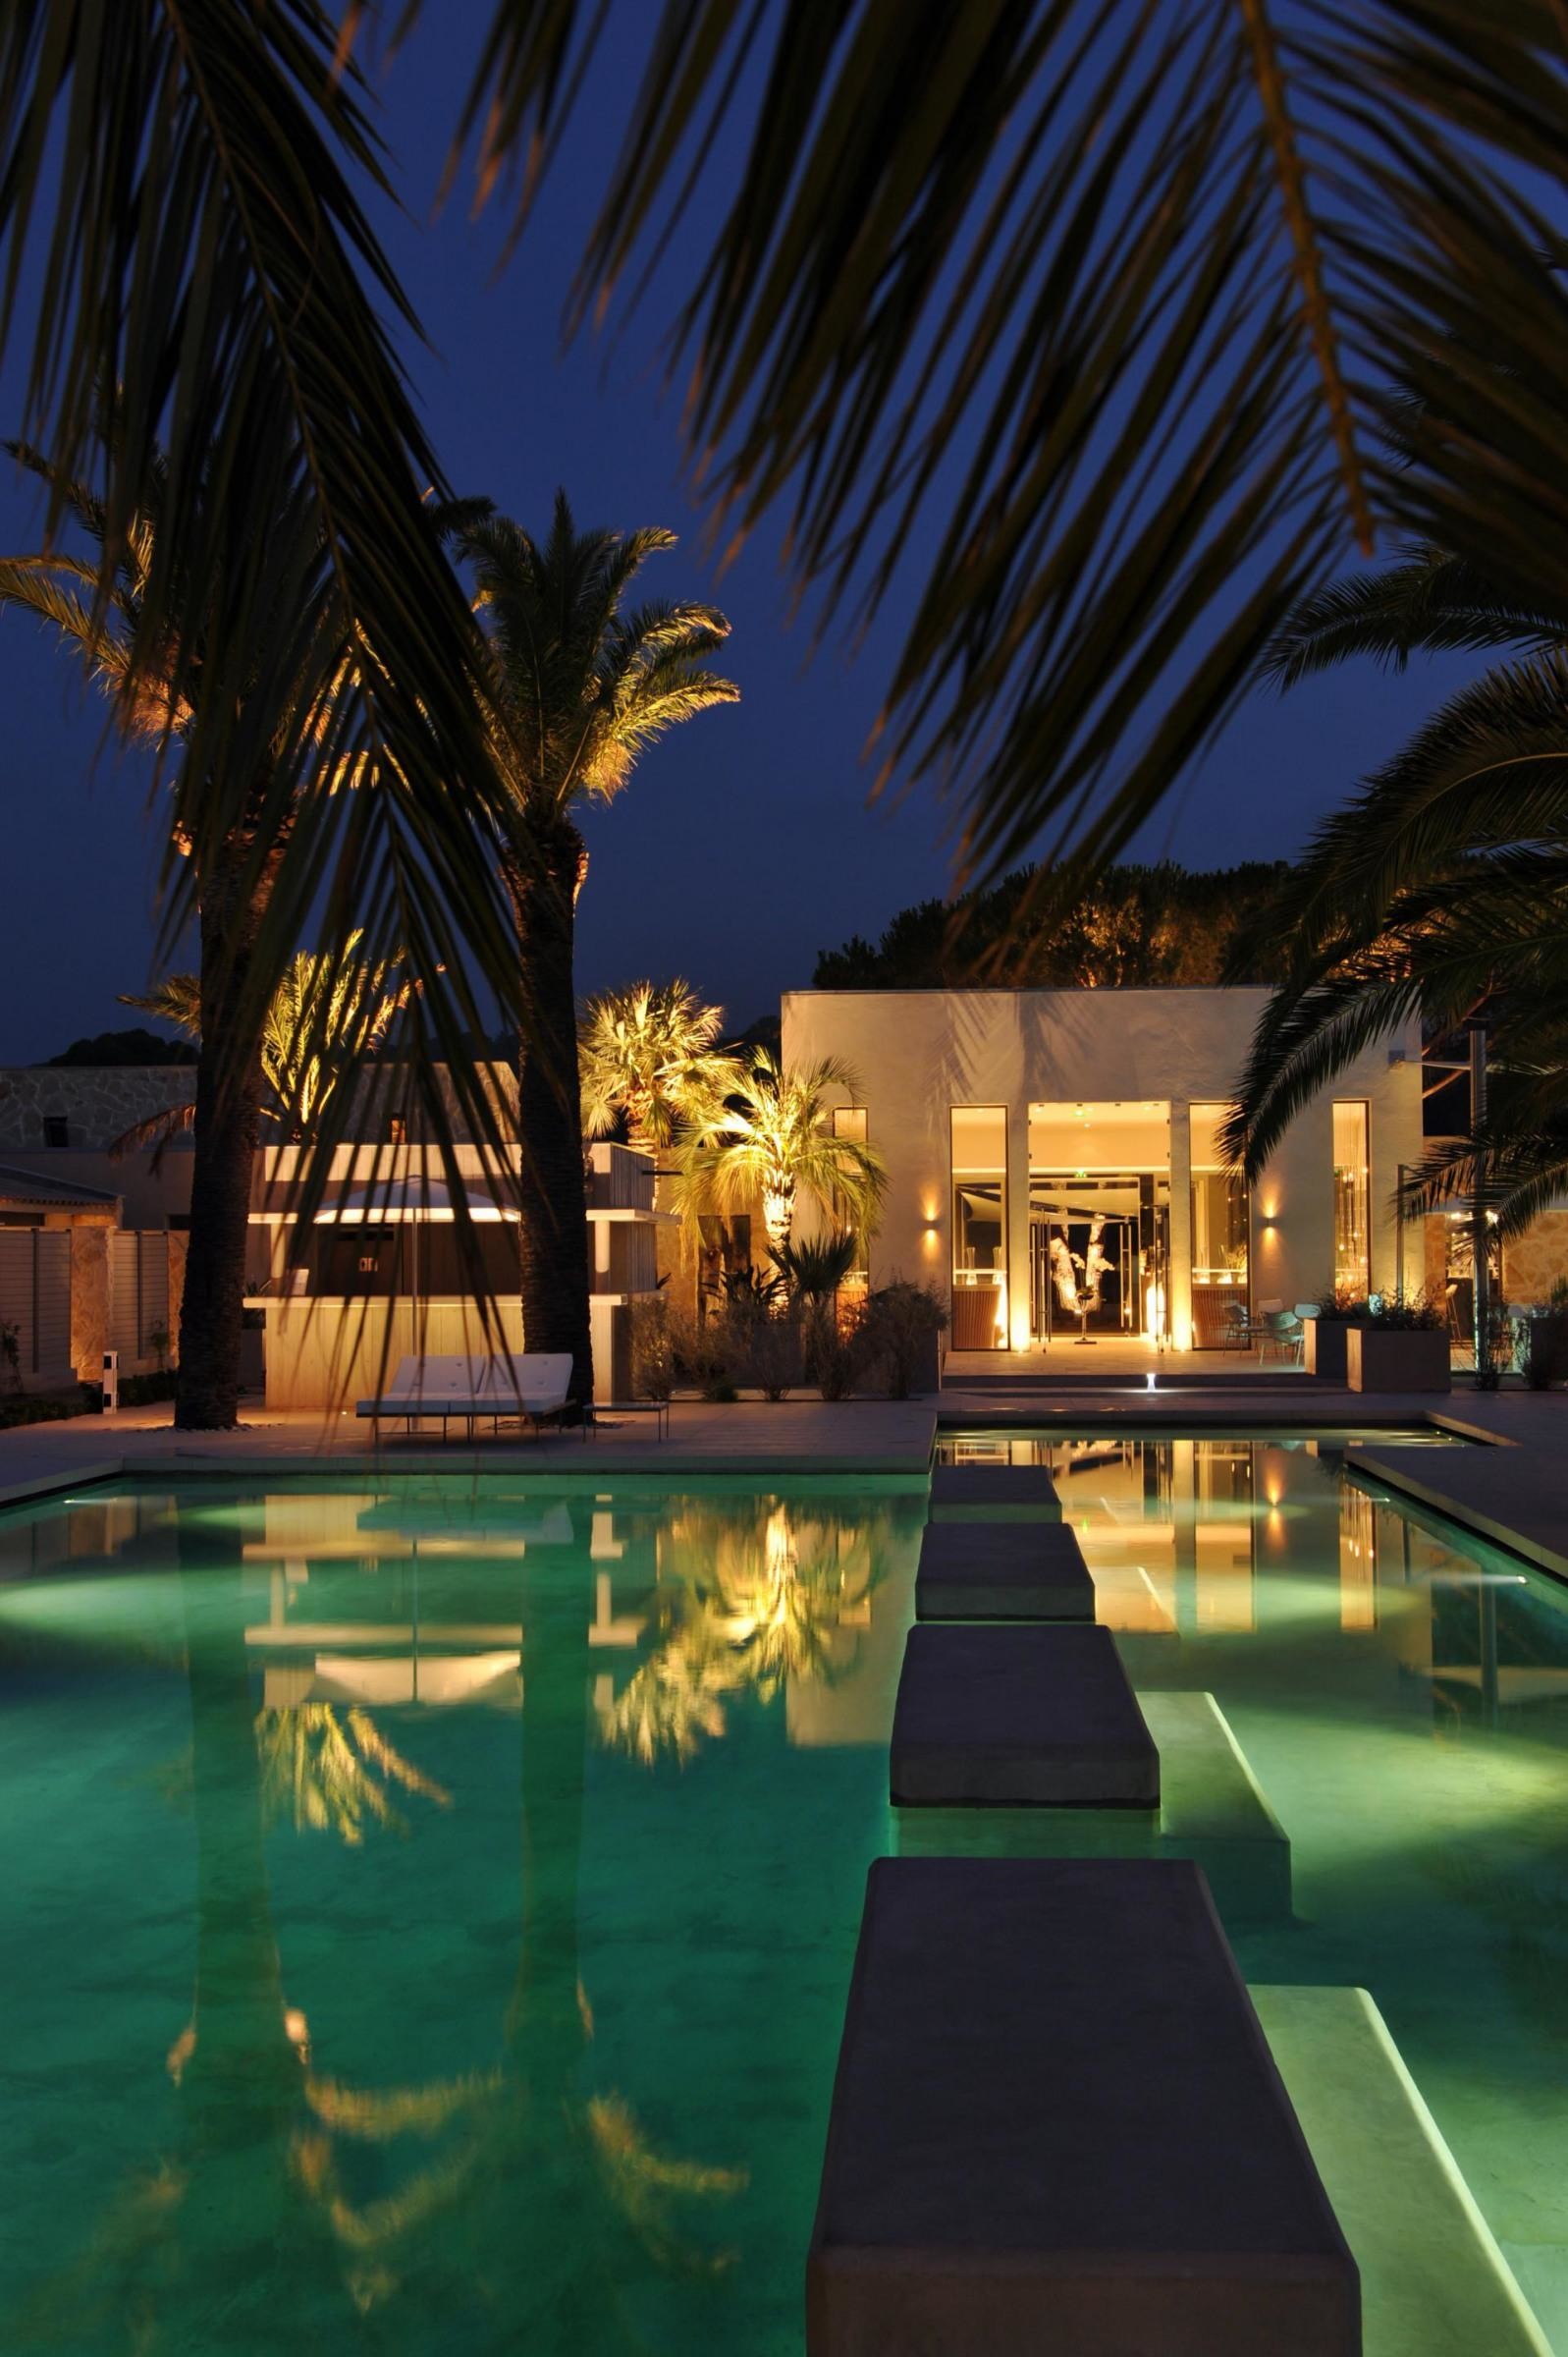 hotel-sezz-saint-tropez-pool-by-night-3-manuel-zublena-55785-3200-2400-auto